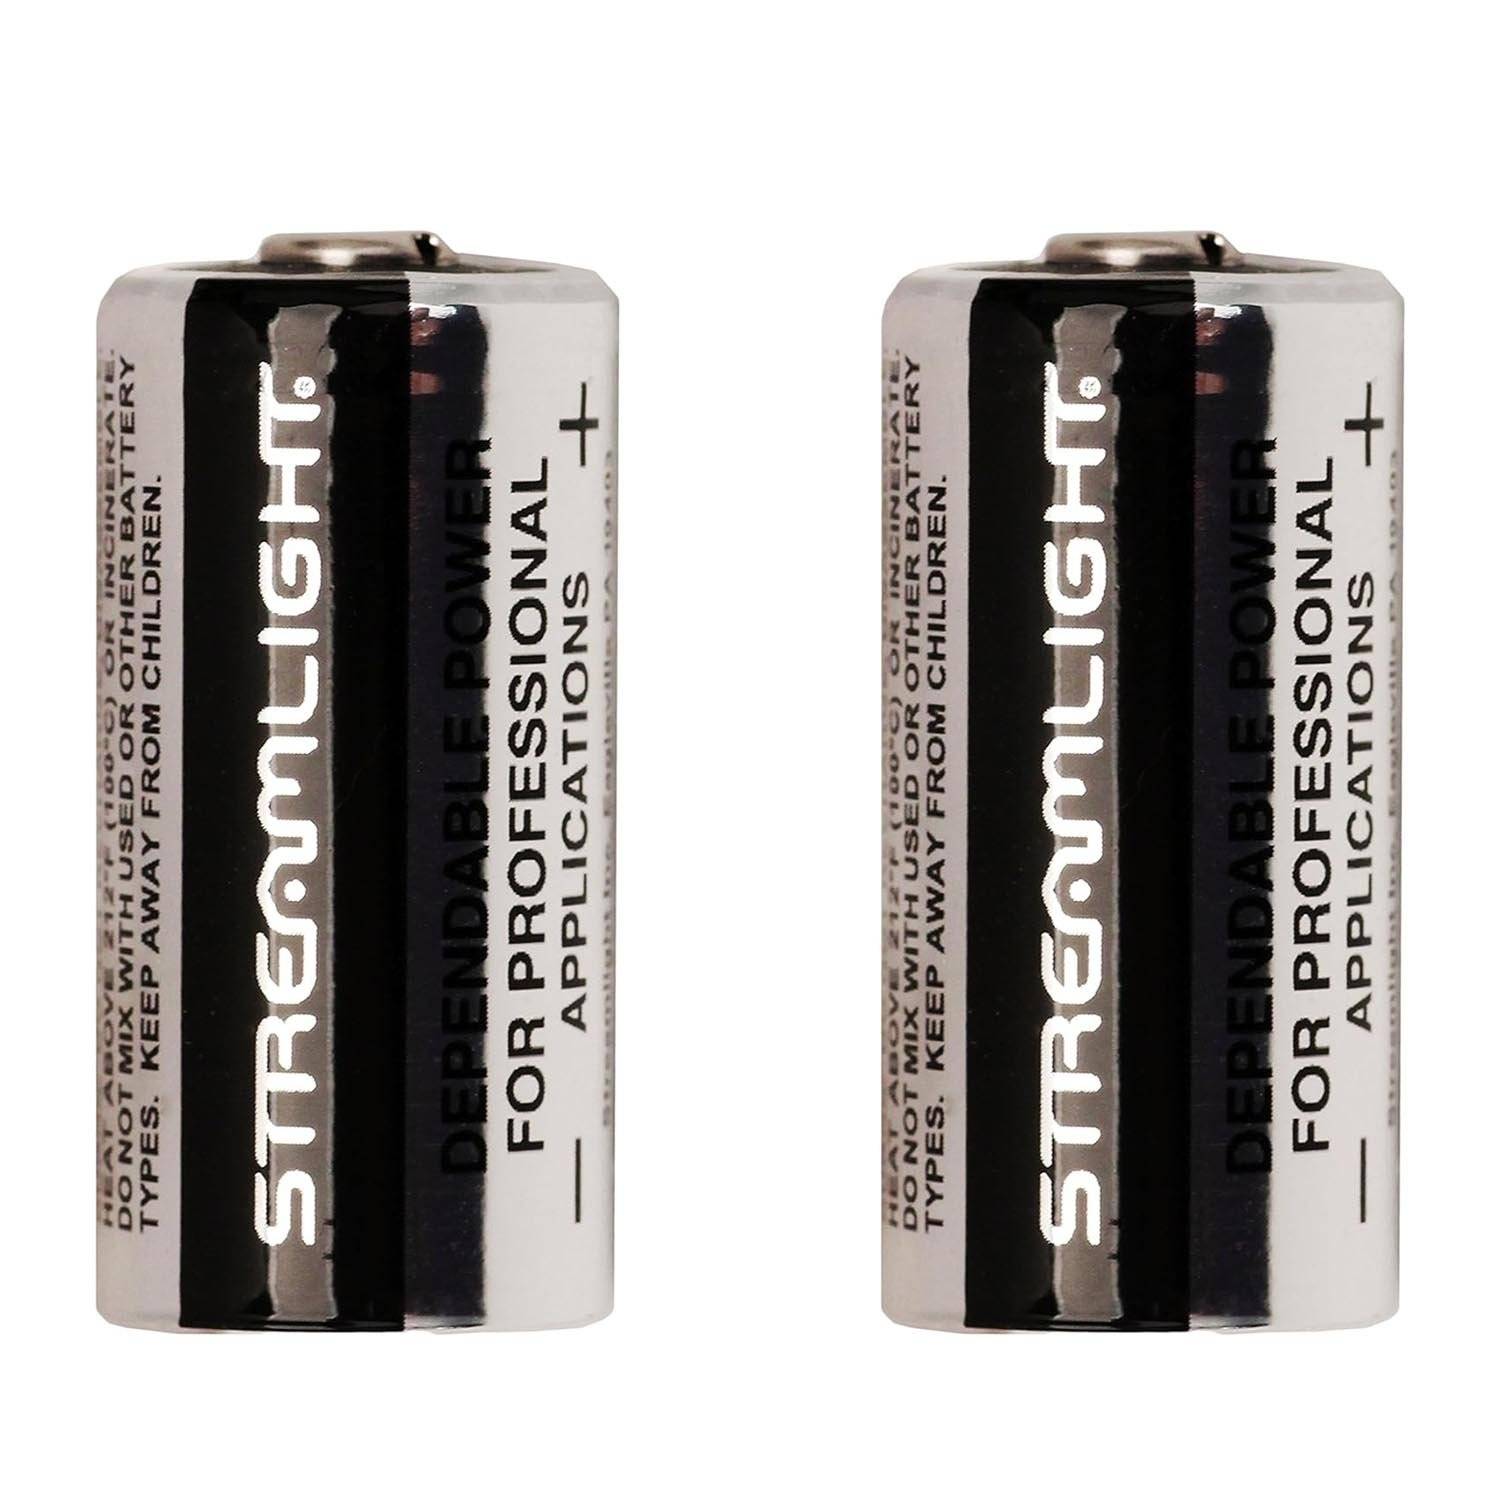 Streamlight 3V Lithium Batteries 2 Pack